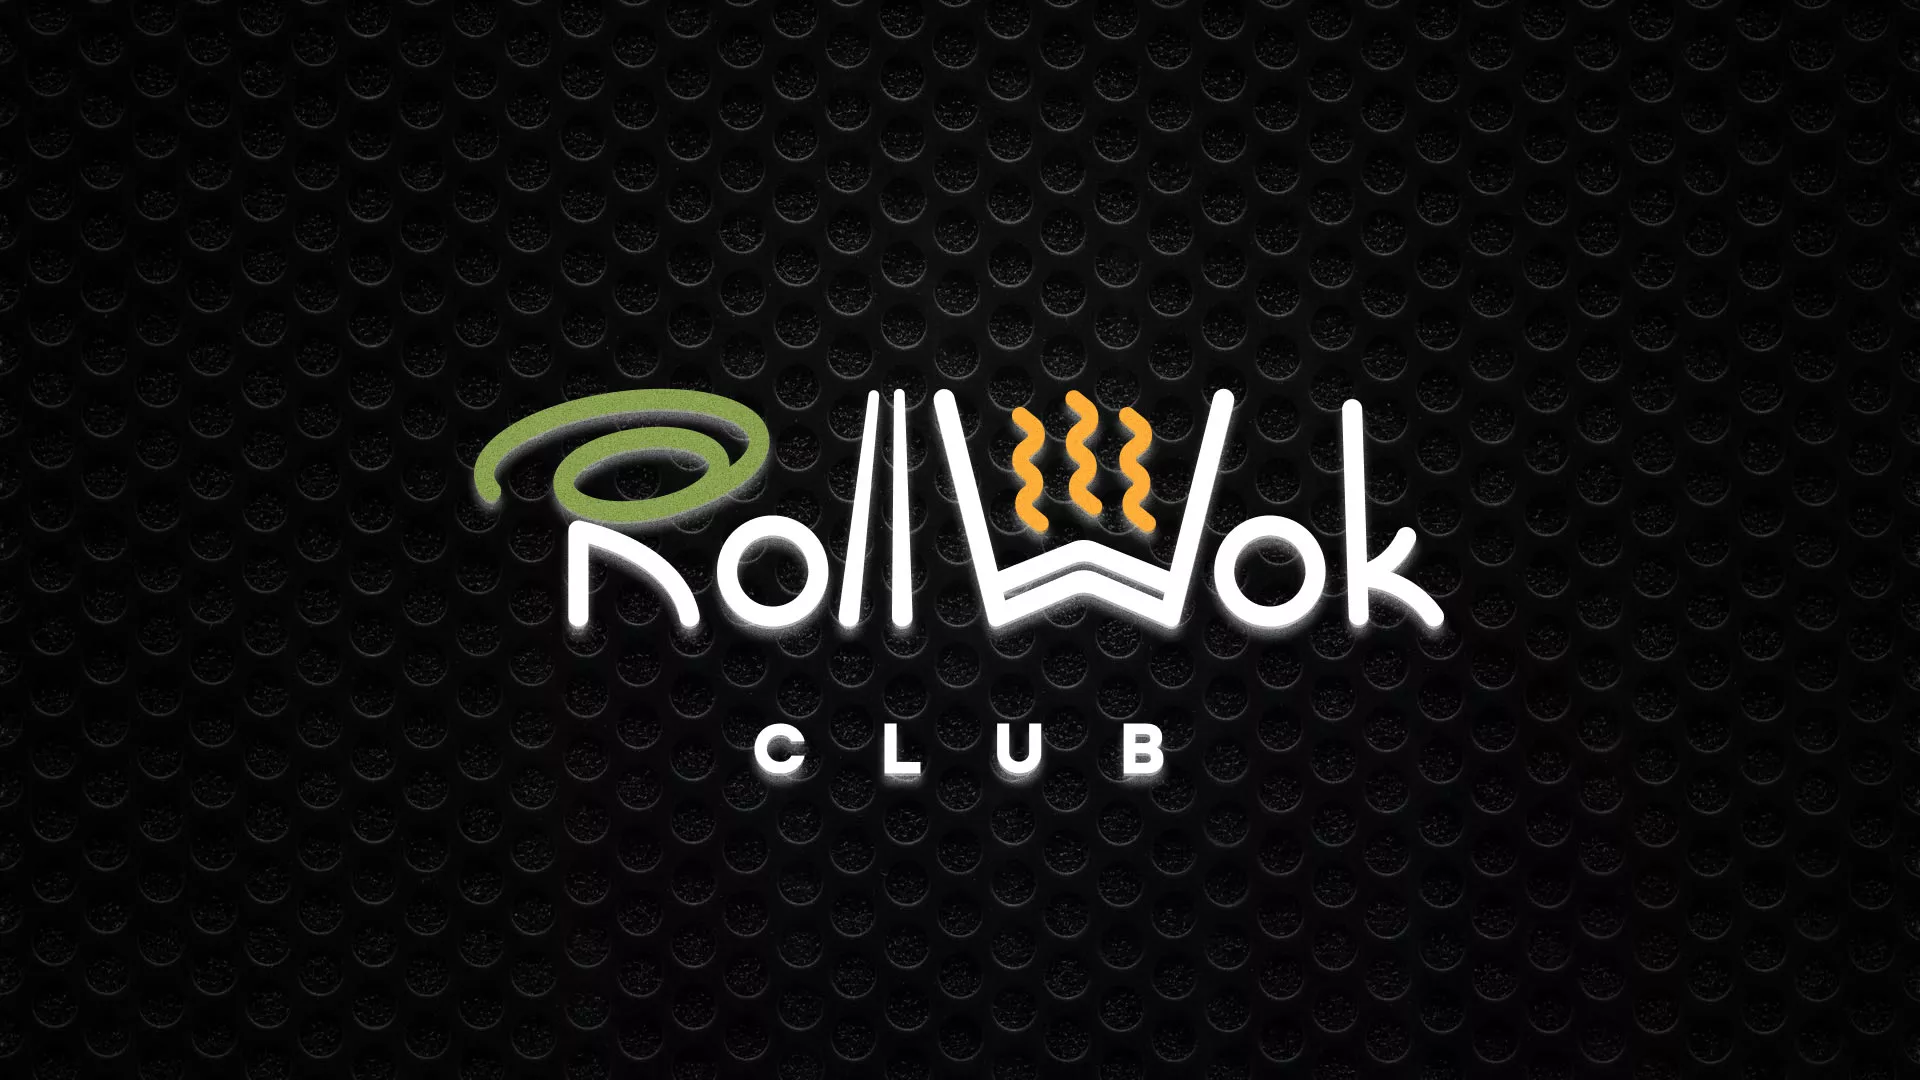 Брендирование торговых точек суши-бара «Roll Wok Club» в Конаково